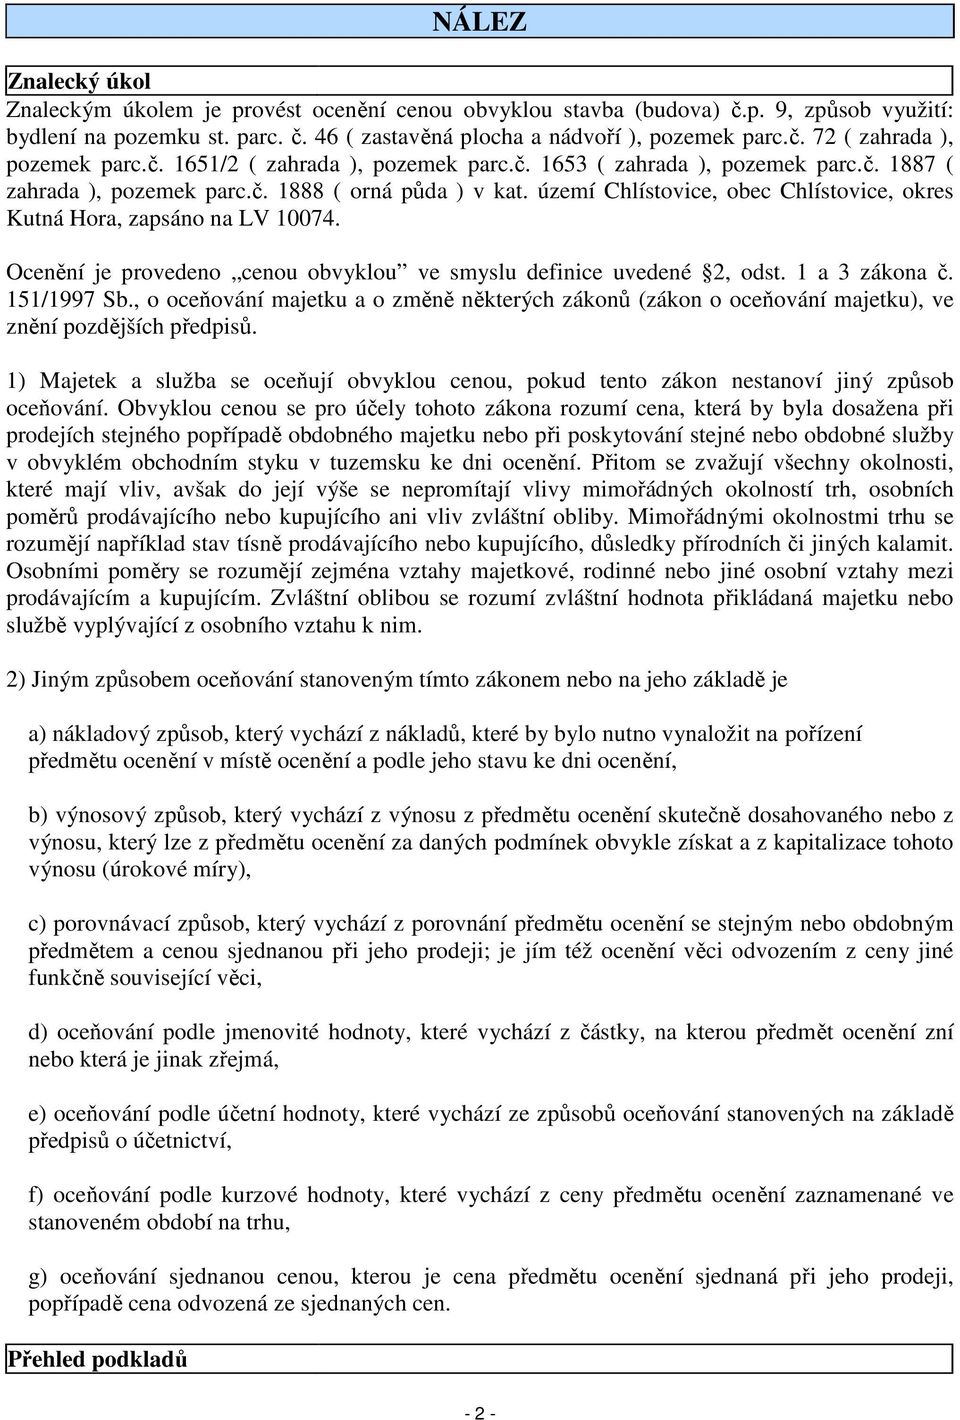 území Chlístovice, obec Chlístovice, okres Kutná Hora, zapsáno na LV 10074. Ocenění je provedeno cenou obvyklou ve smyslu definice uvedené 2, odst. 1 a 3 zákona č. 151/1997 Sb.